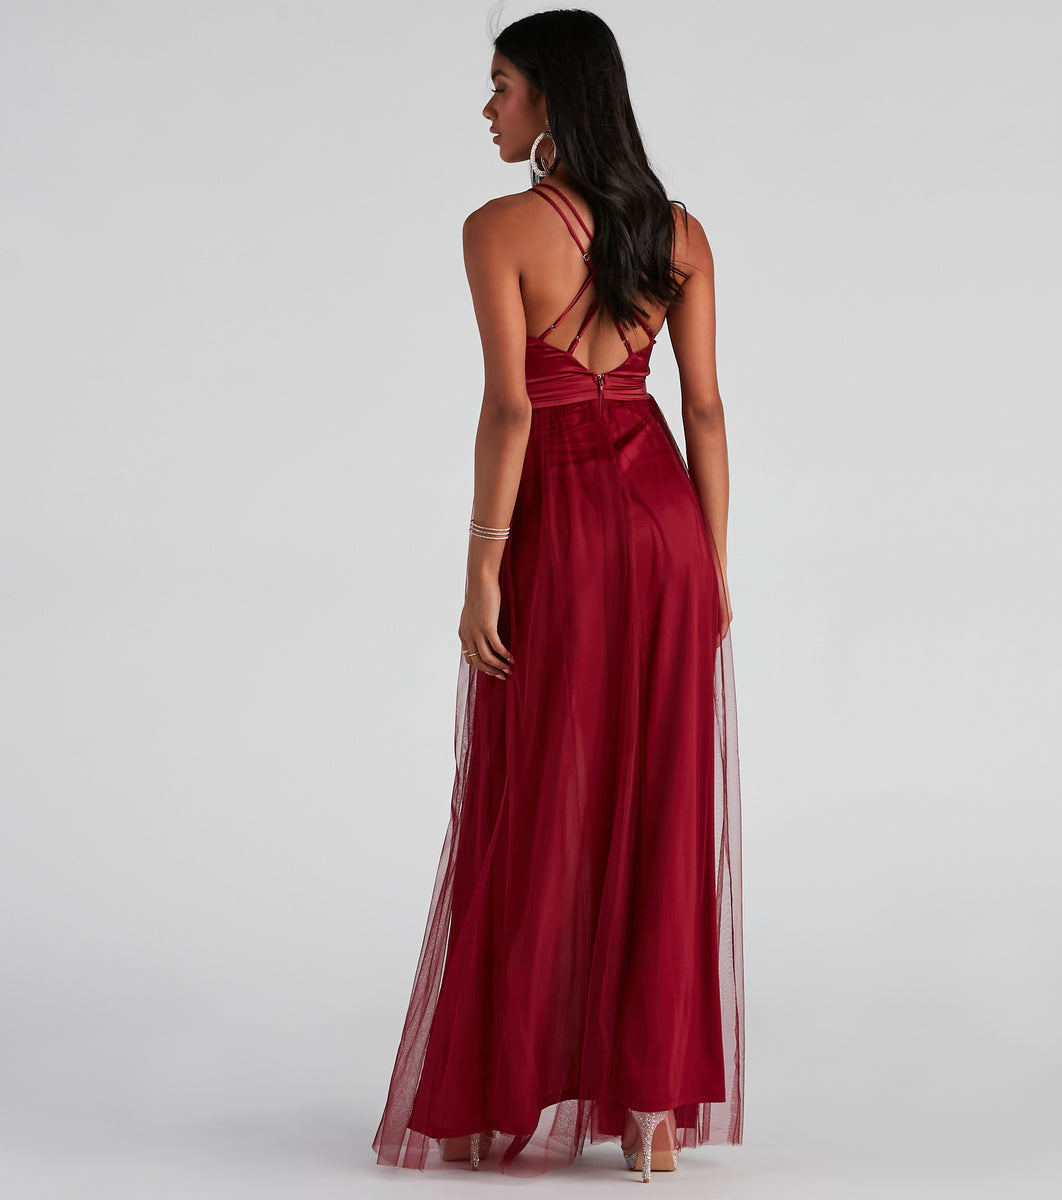 windsor red dress